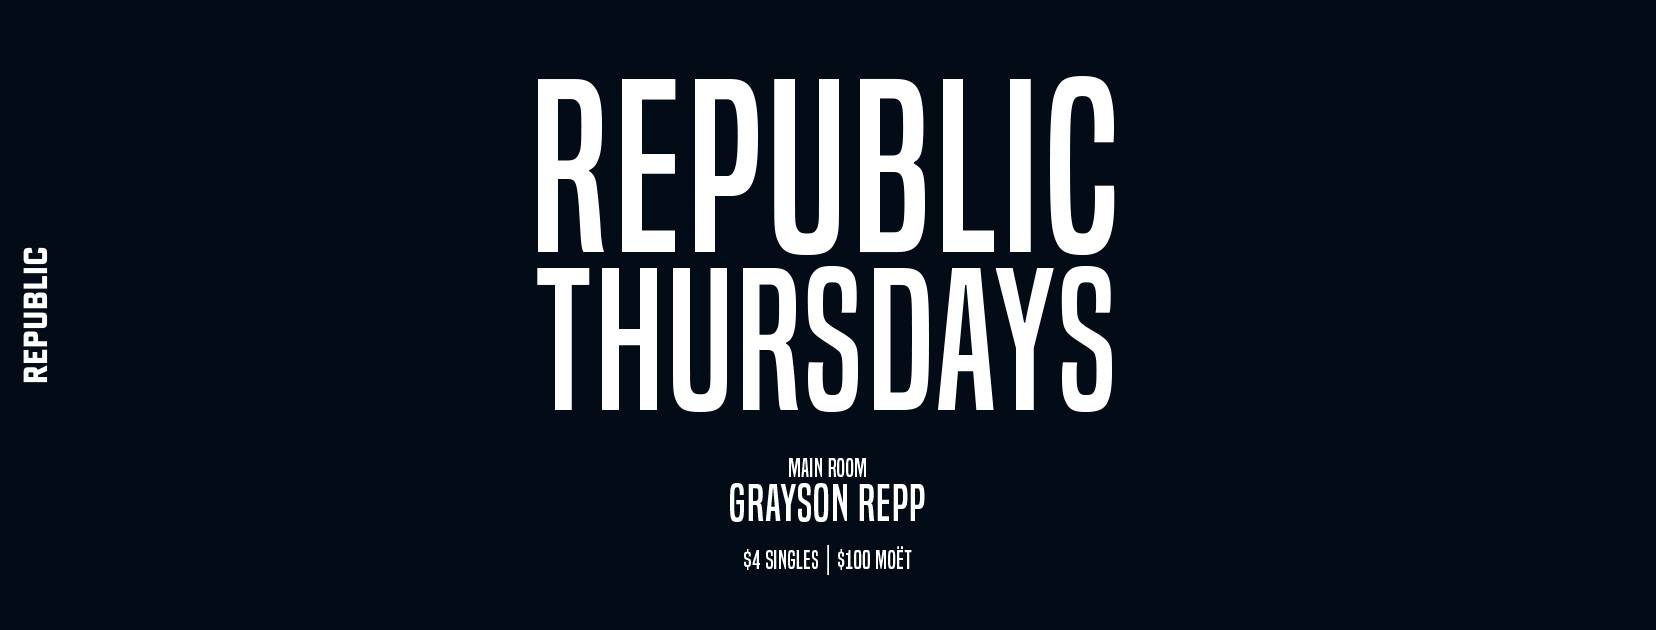 Republic-thursdays